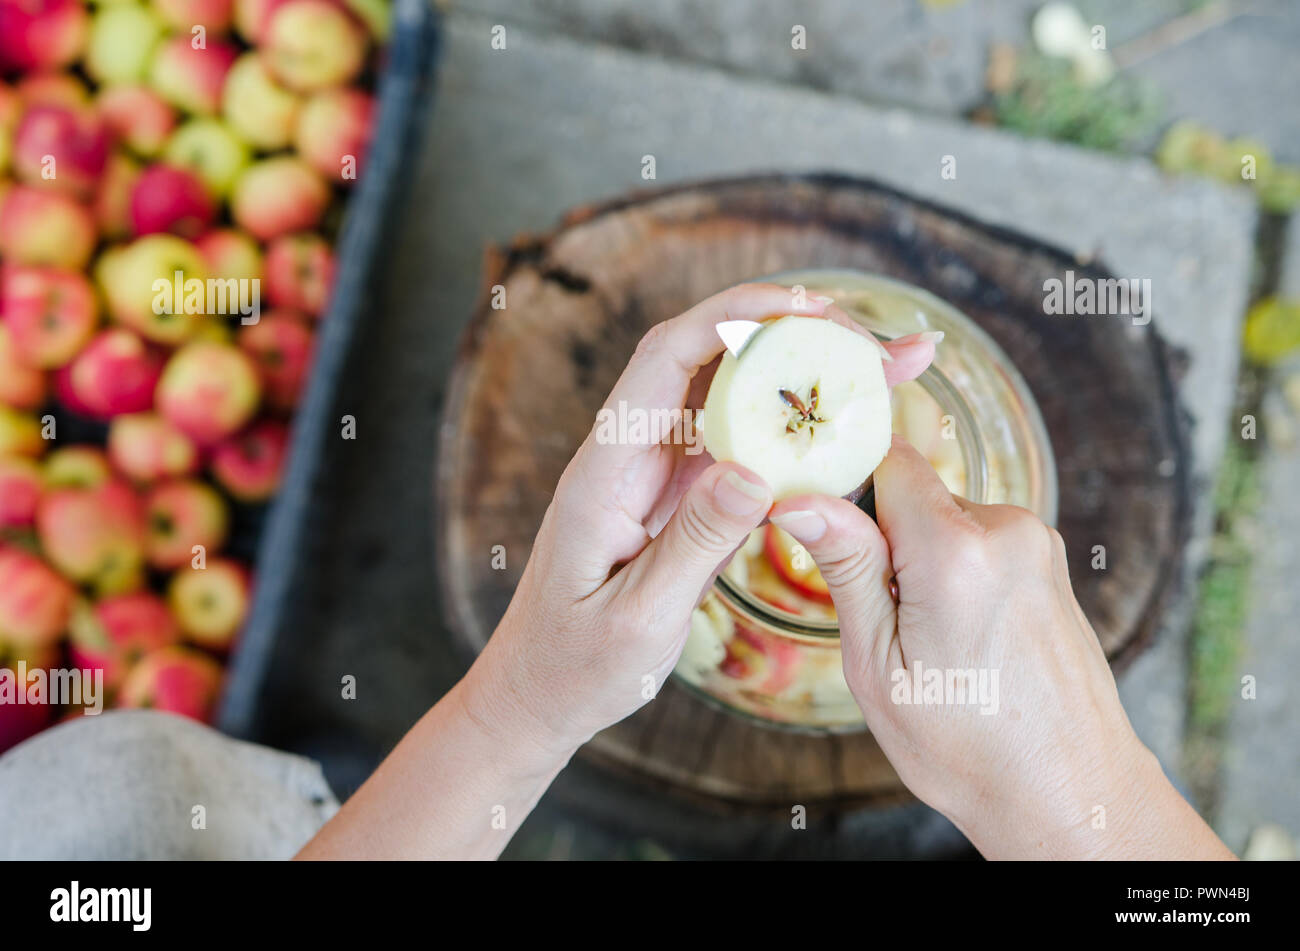 Making of apple vinegar - scene from above - hand peeling apples Stock Photo